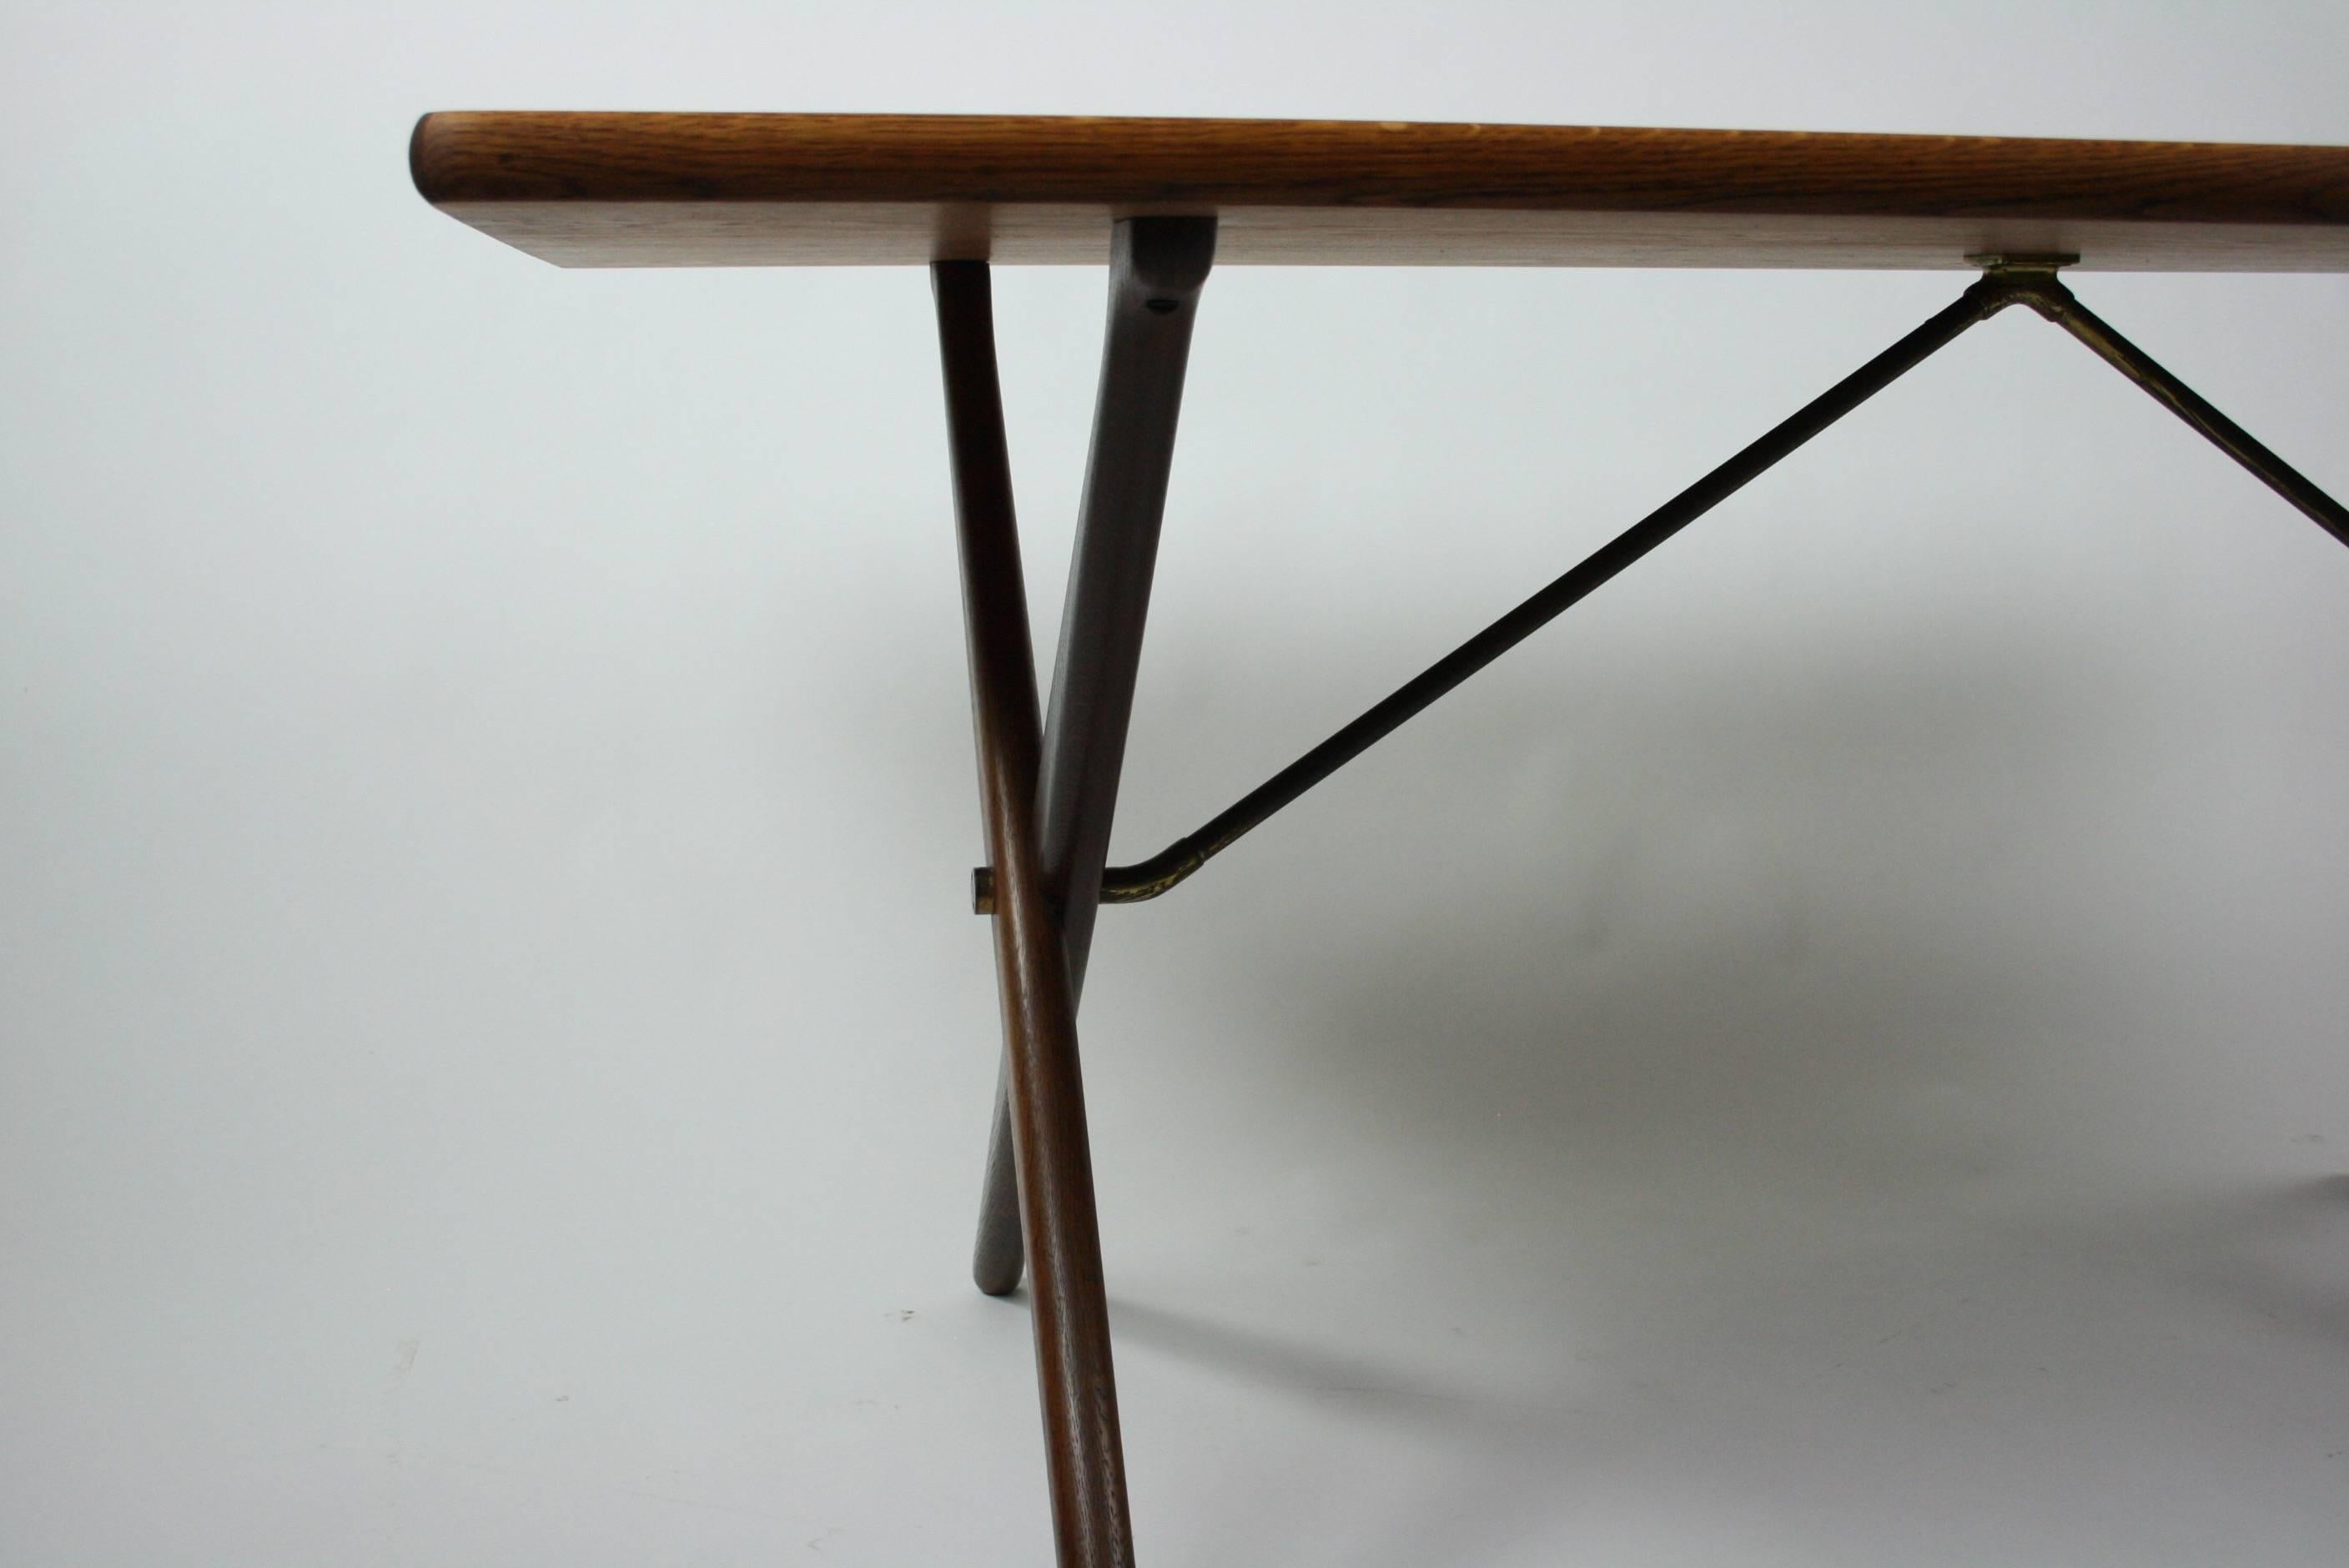 20th Century Original Teak Dining Table Designed by Hans J. Wegner Model AT-303